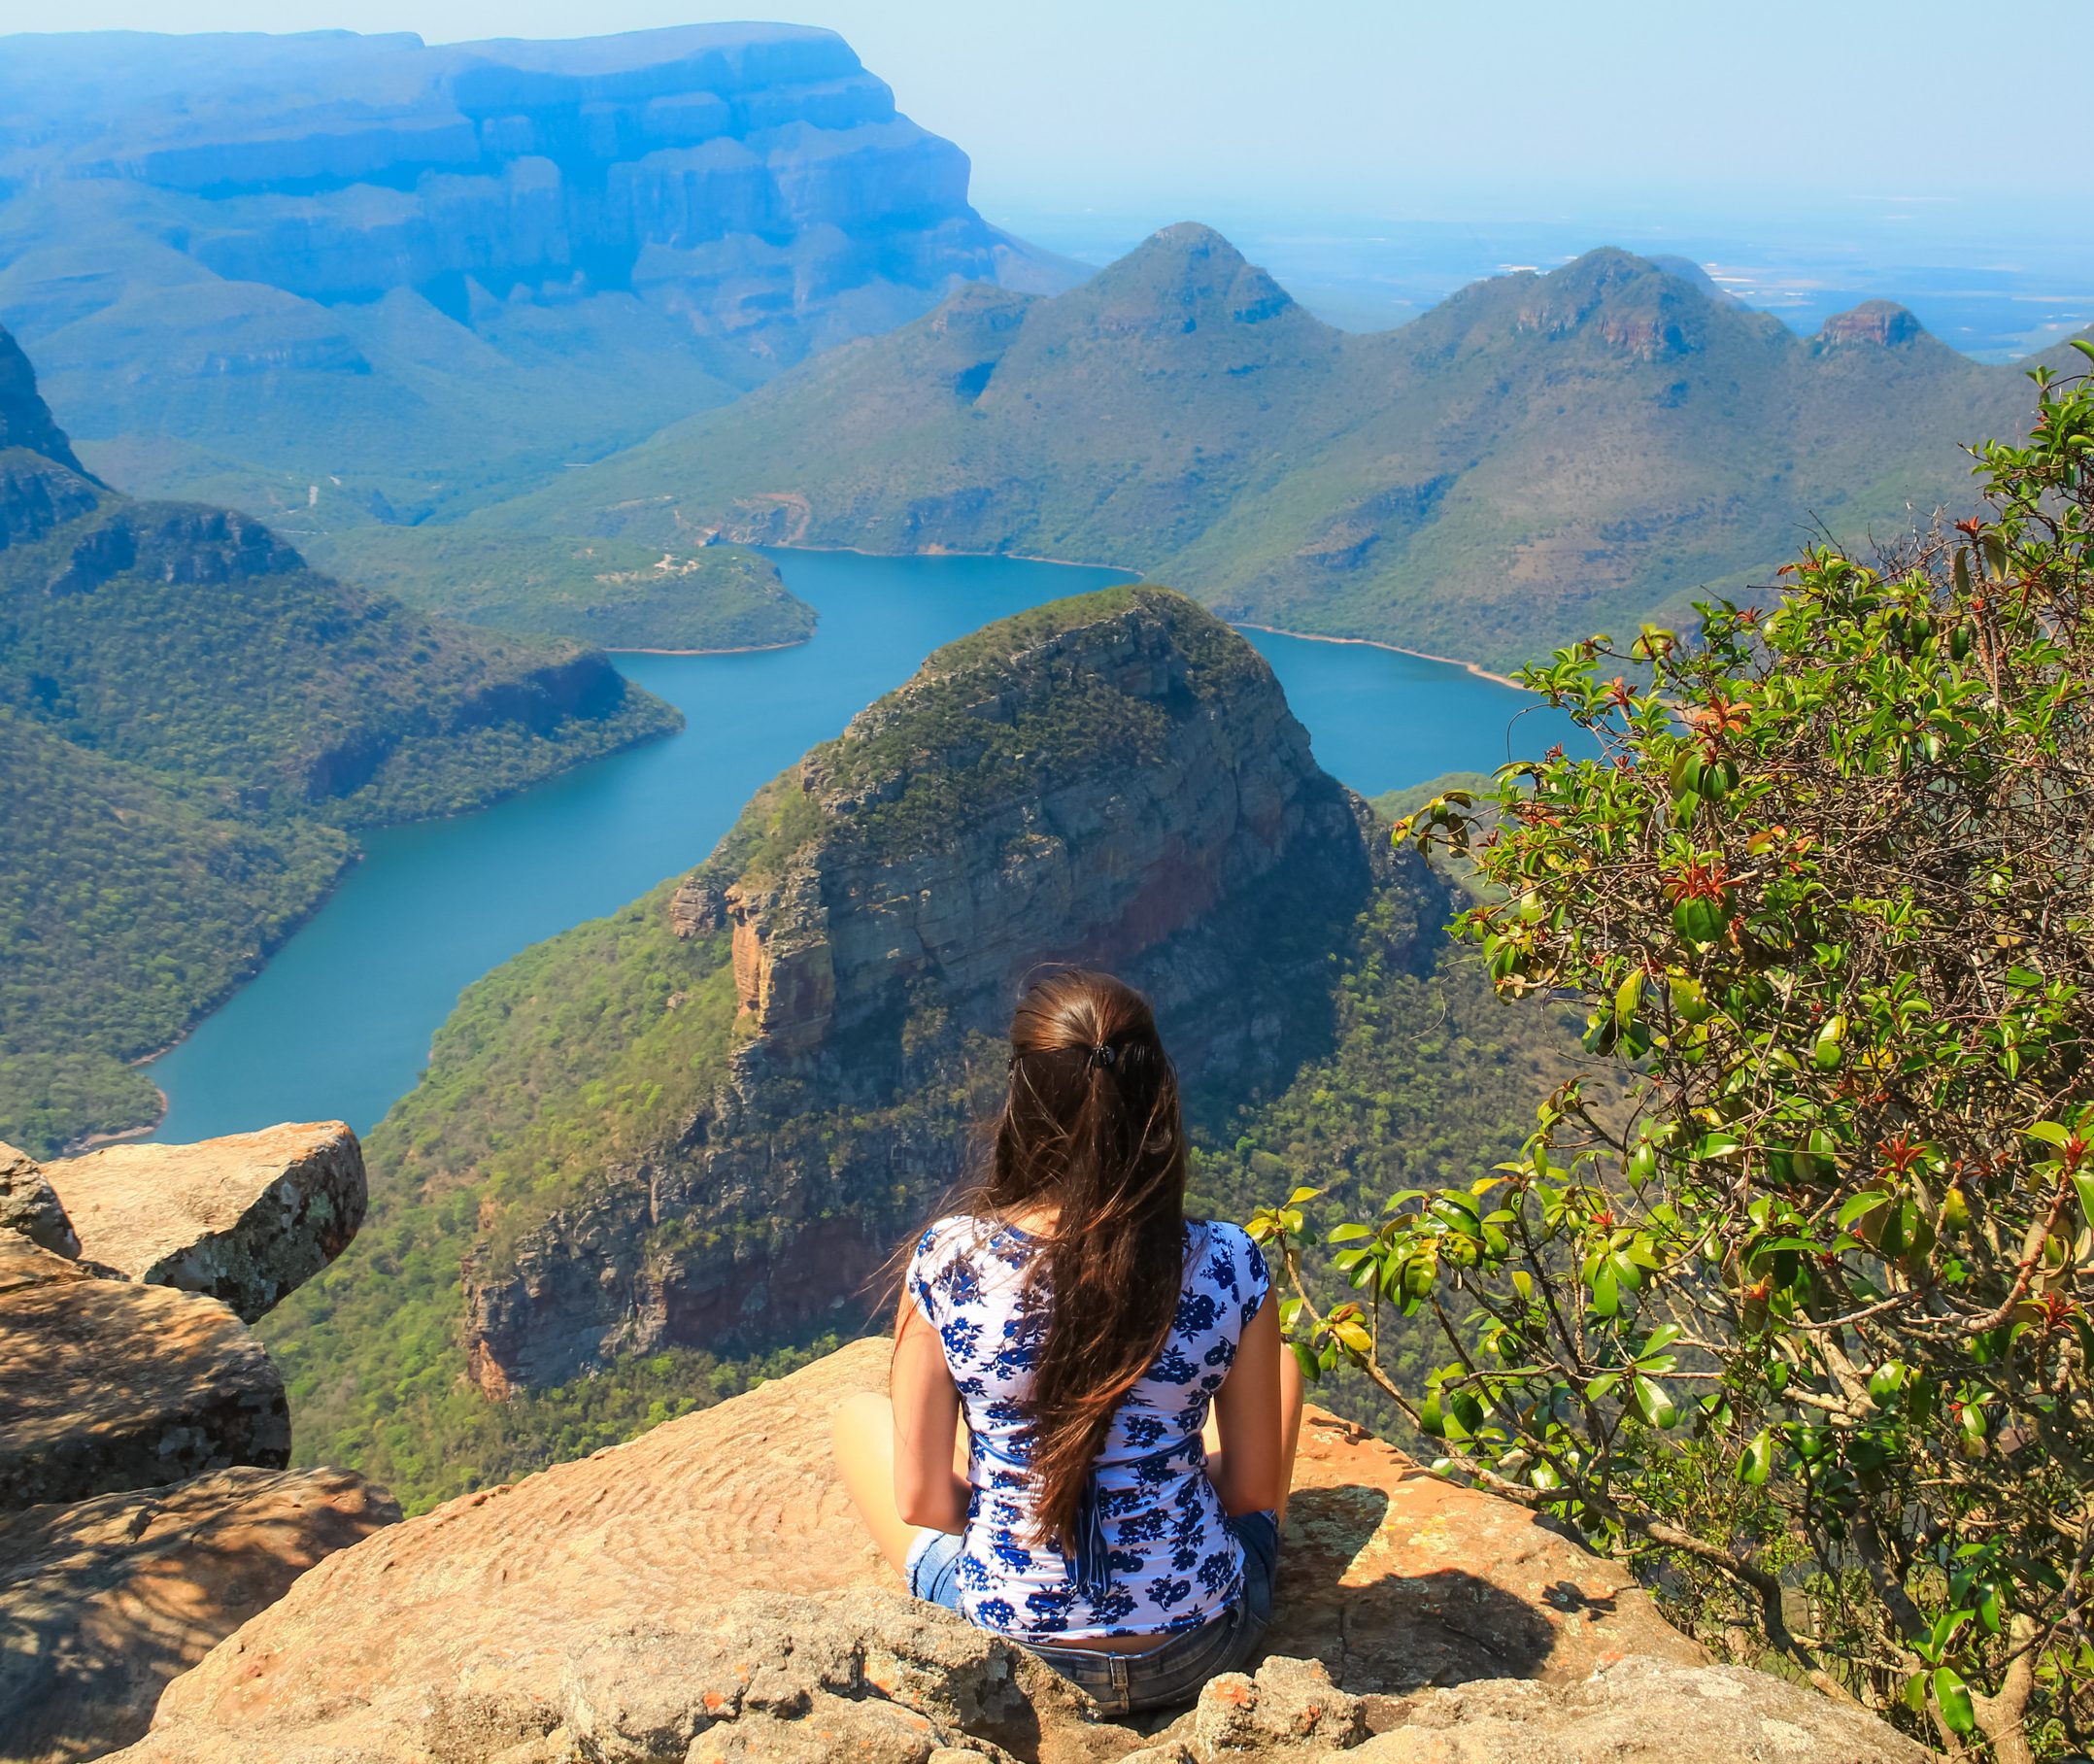 Vakantie Zuid Afrika | De wereld in één land - 333travel